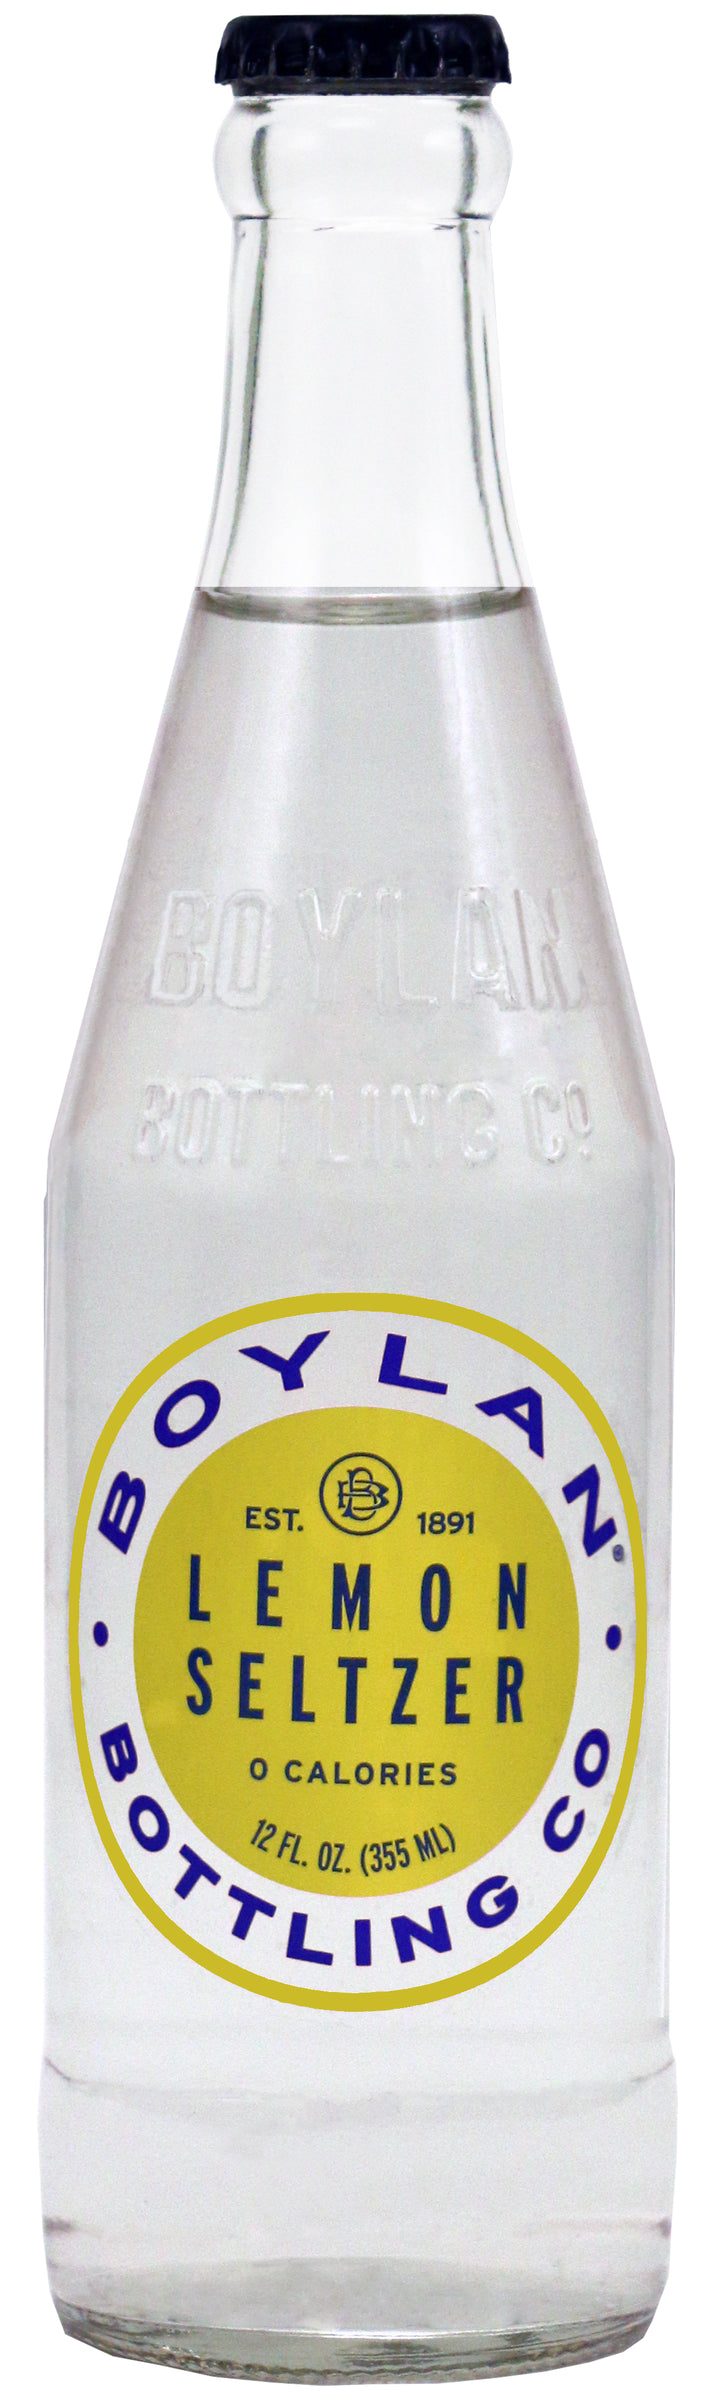 Boylan Bottling Lemonade Sltz-12 fl oz.s-4/Box-6/Case